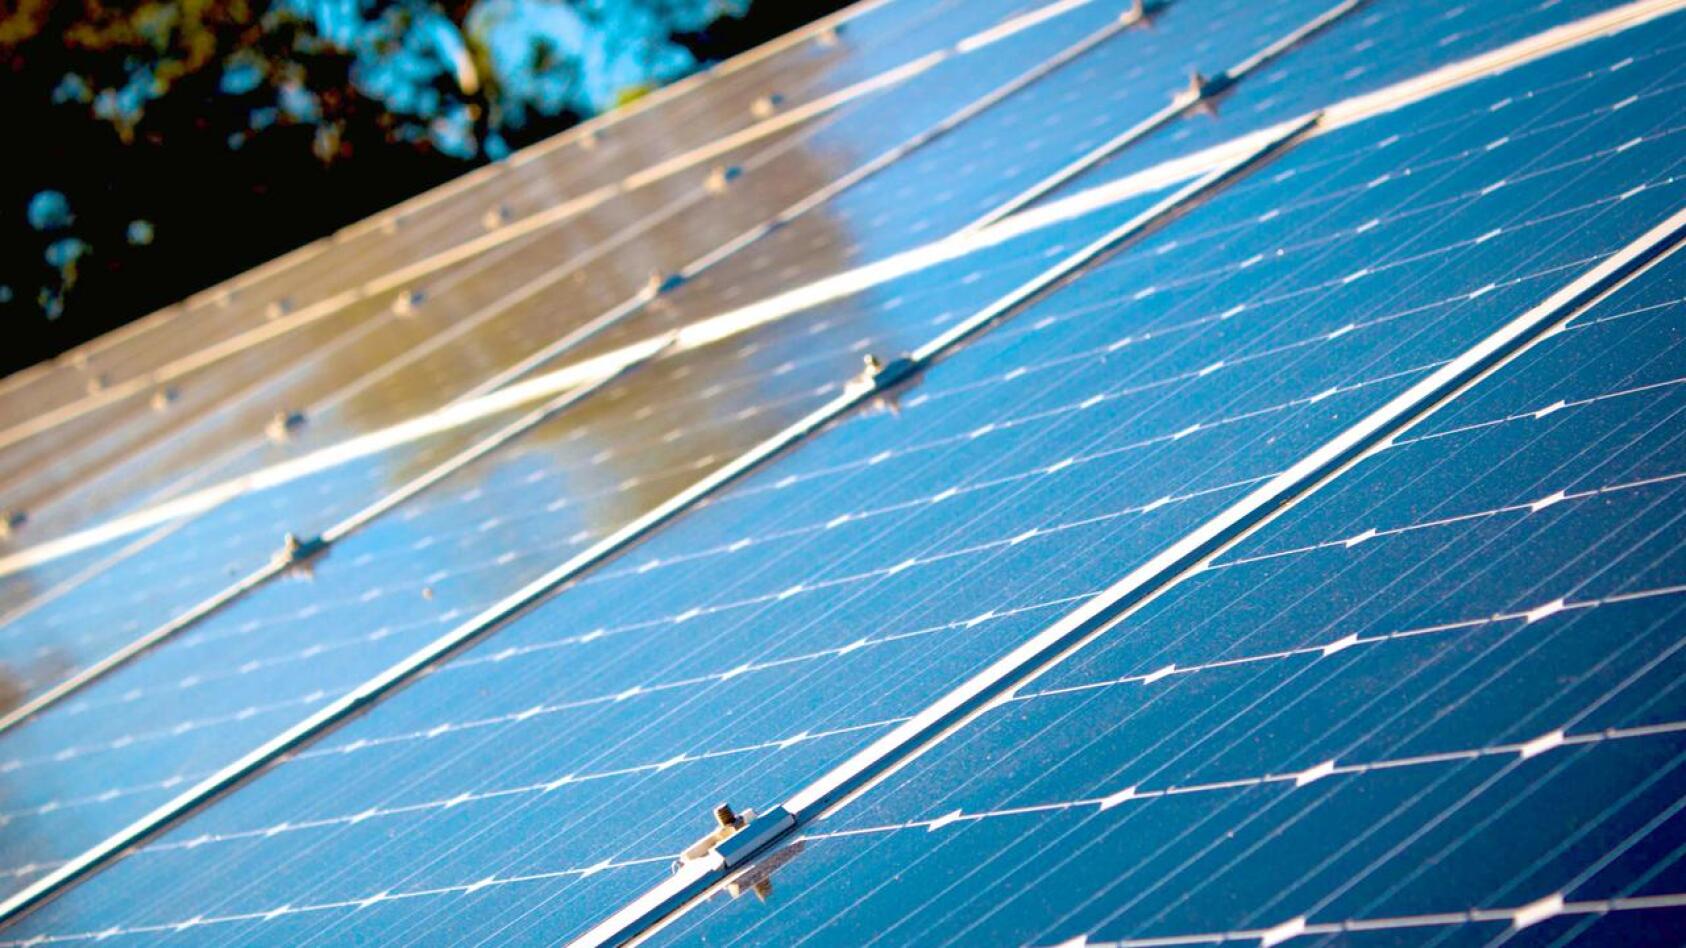 Haapaveden kaupungintalolle on mahdollista asentaa teholtaan 55 kilowatin aurinkopaneelijärjestelmä, joka maatelineeseen asennettuna tuottaa sähköä noin 50 000 kilowattia vuodessa. Kaupungintalon sähkönkulutus vuodessa on ollut noin 123 000 kilowattituntia.